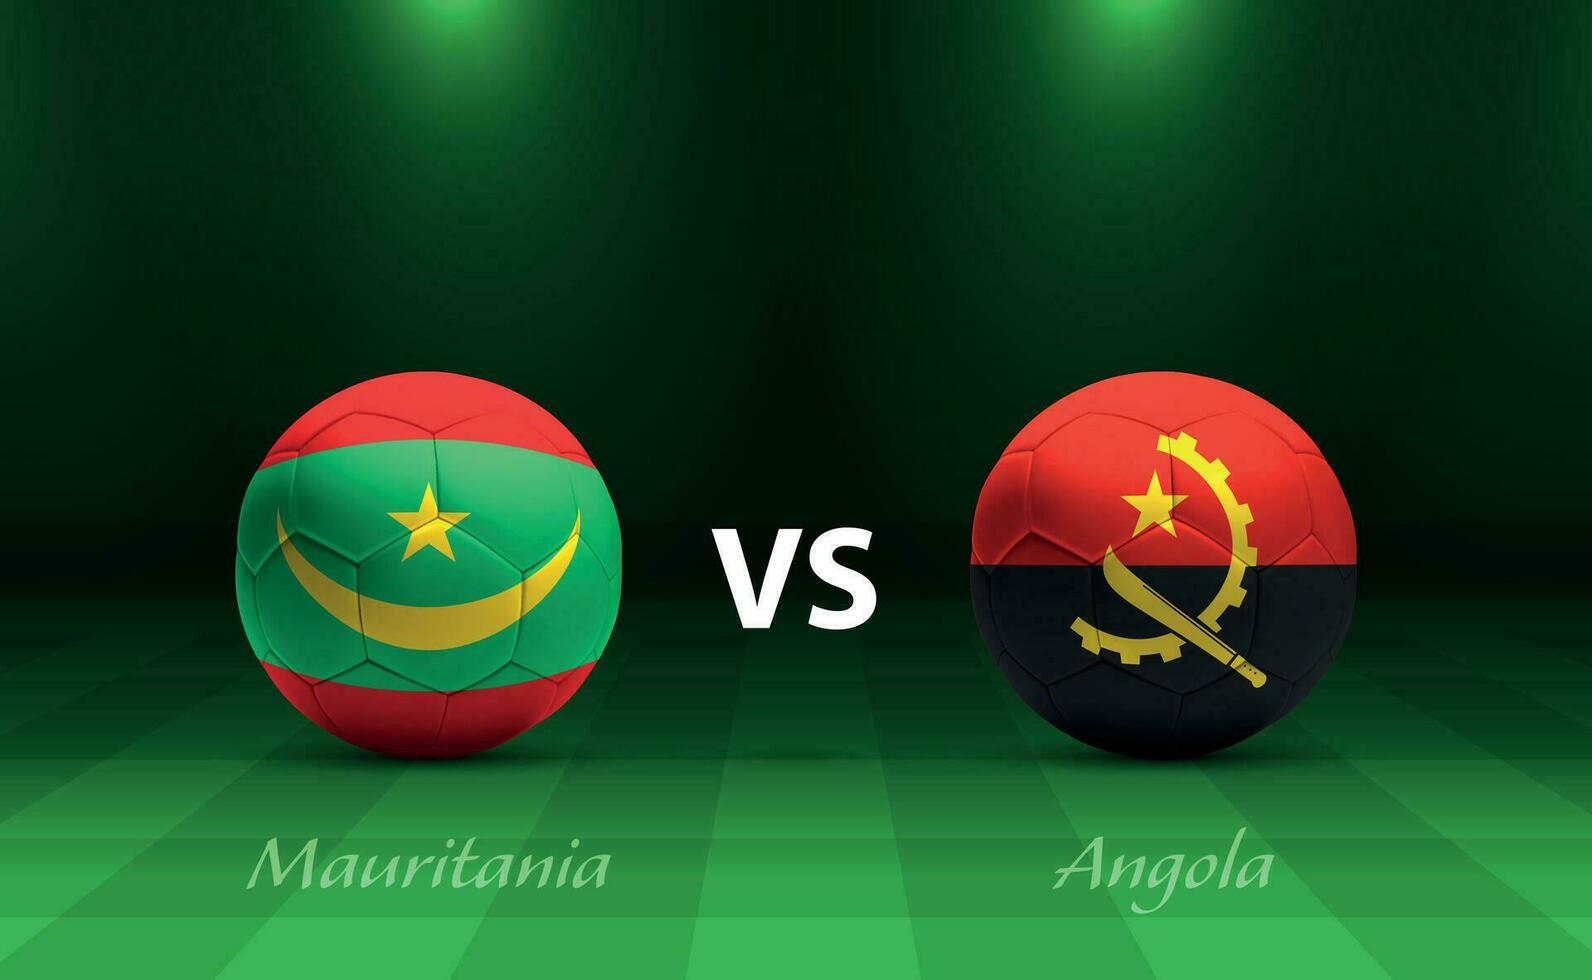 Mauritania vs angola fútbol americano marcador transmitir modelo vector